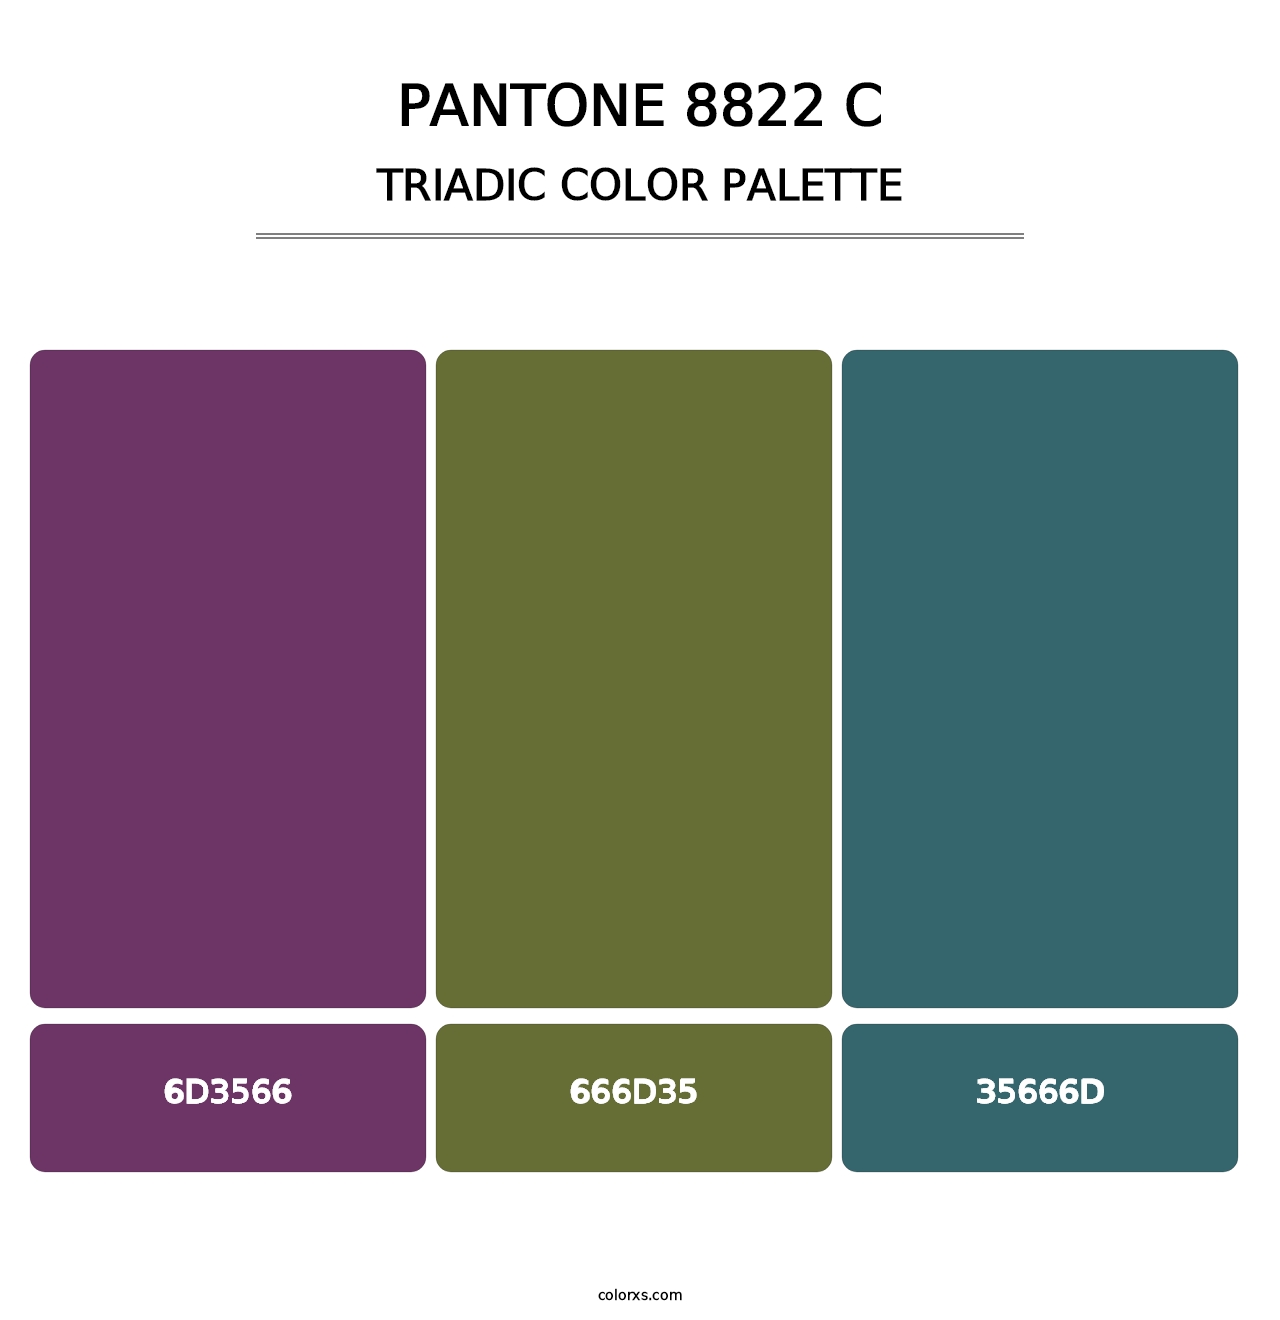 PANTONE 8822 C - Triadic Color Palette